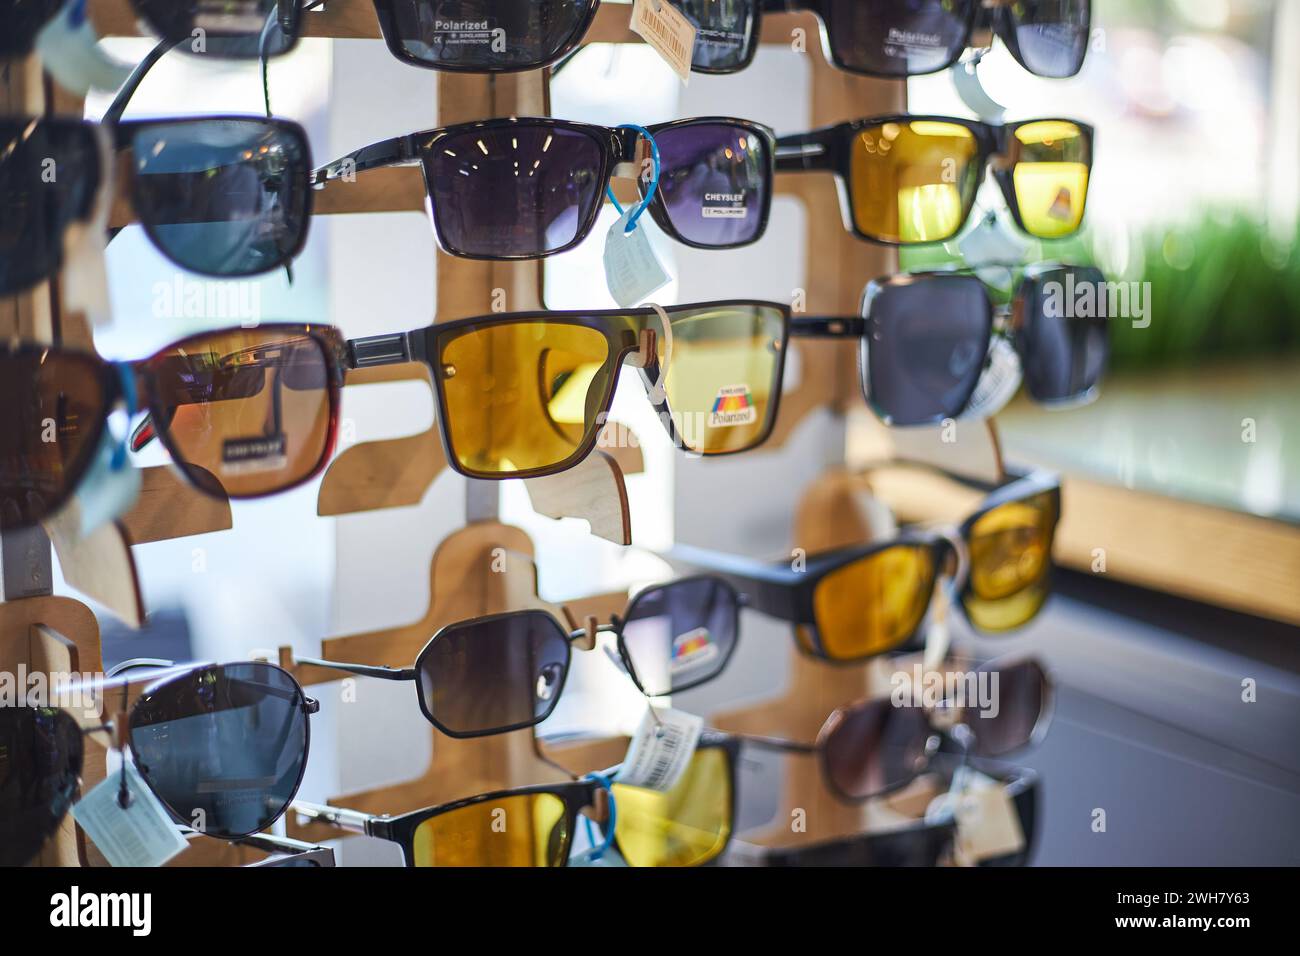 Portatelo in un negozio con molti occhiali da sole nei colori grigio scuro e giallo per la guida. Negozio di ottica, cura degli occhi. Bishkek, Kirghizistan - 26 maggio 2023. Foto Stock